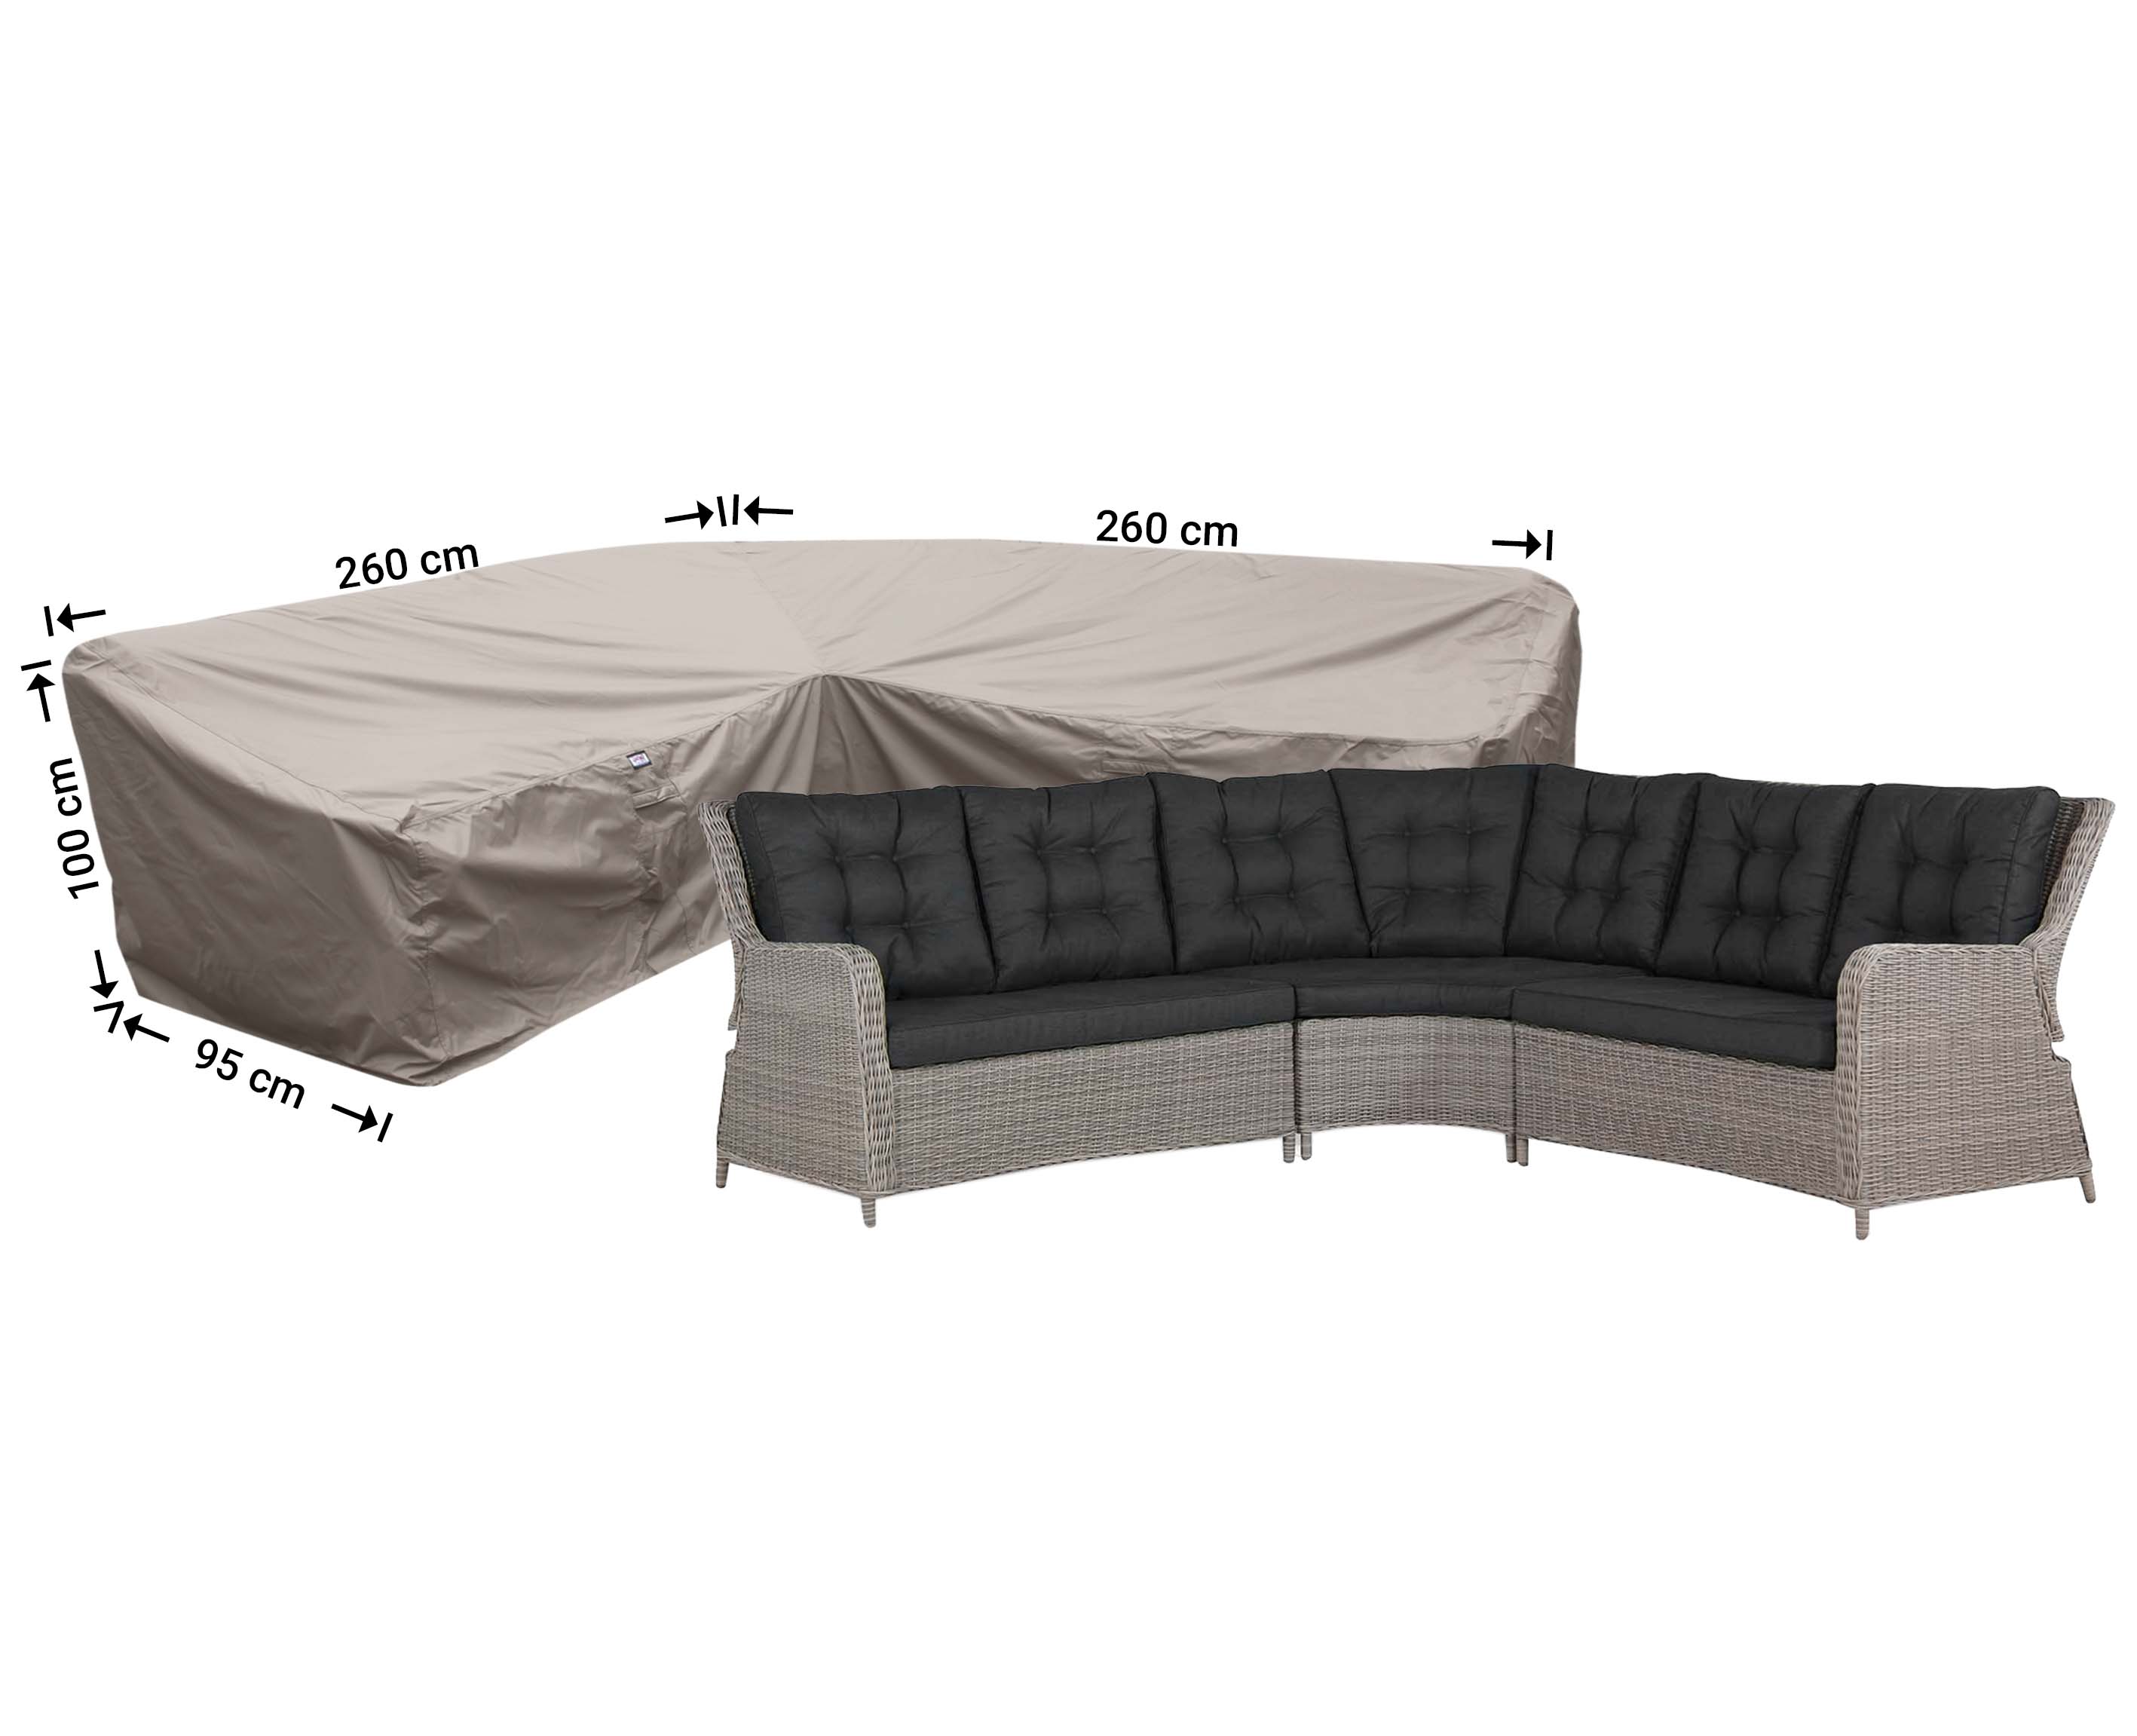 Schutzhülle Lounge Sofa 260 x 260 x 95 H: 100/65 cm